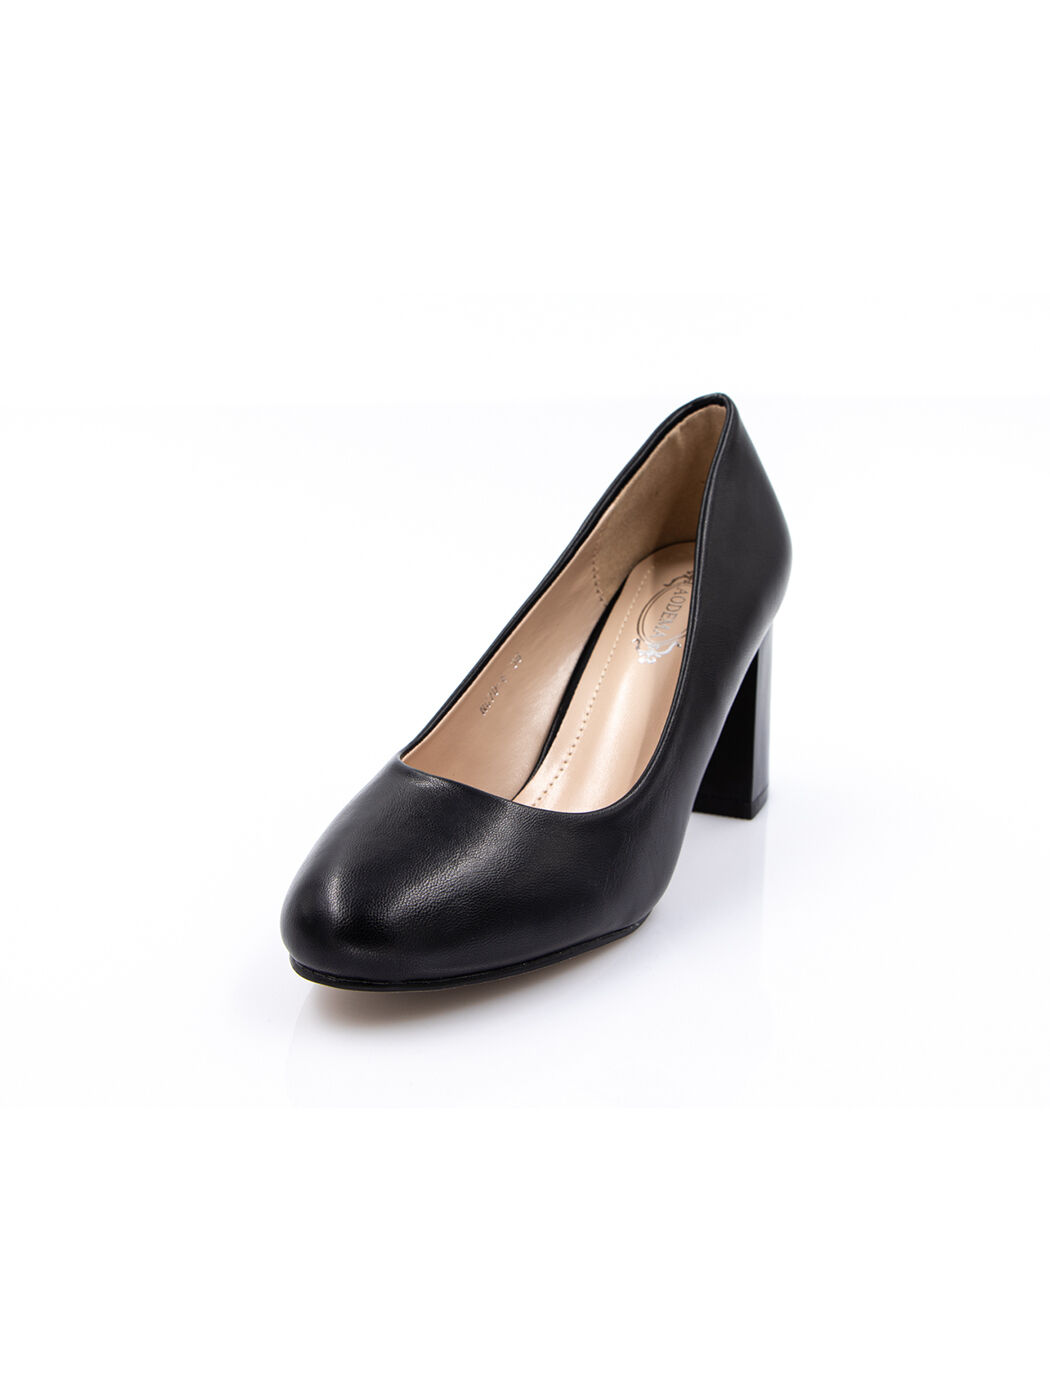 Туфли женские черные экокожа каблук устойчивый демисезон от производителя 4M вид 0